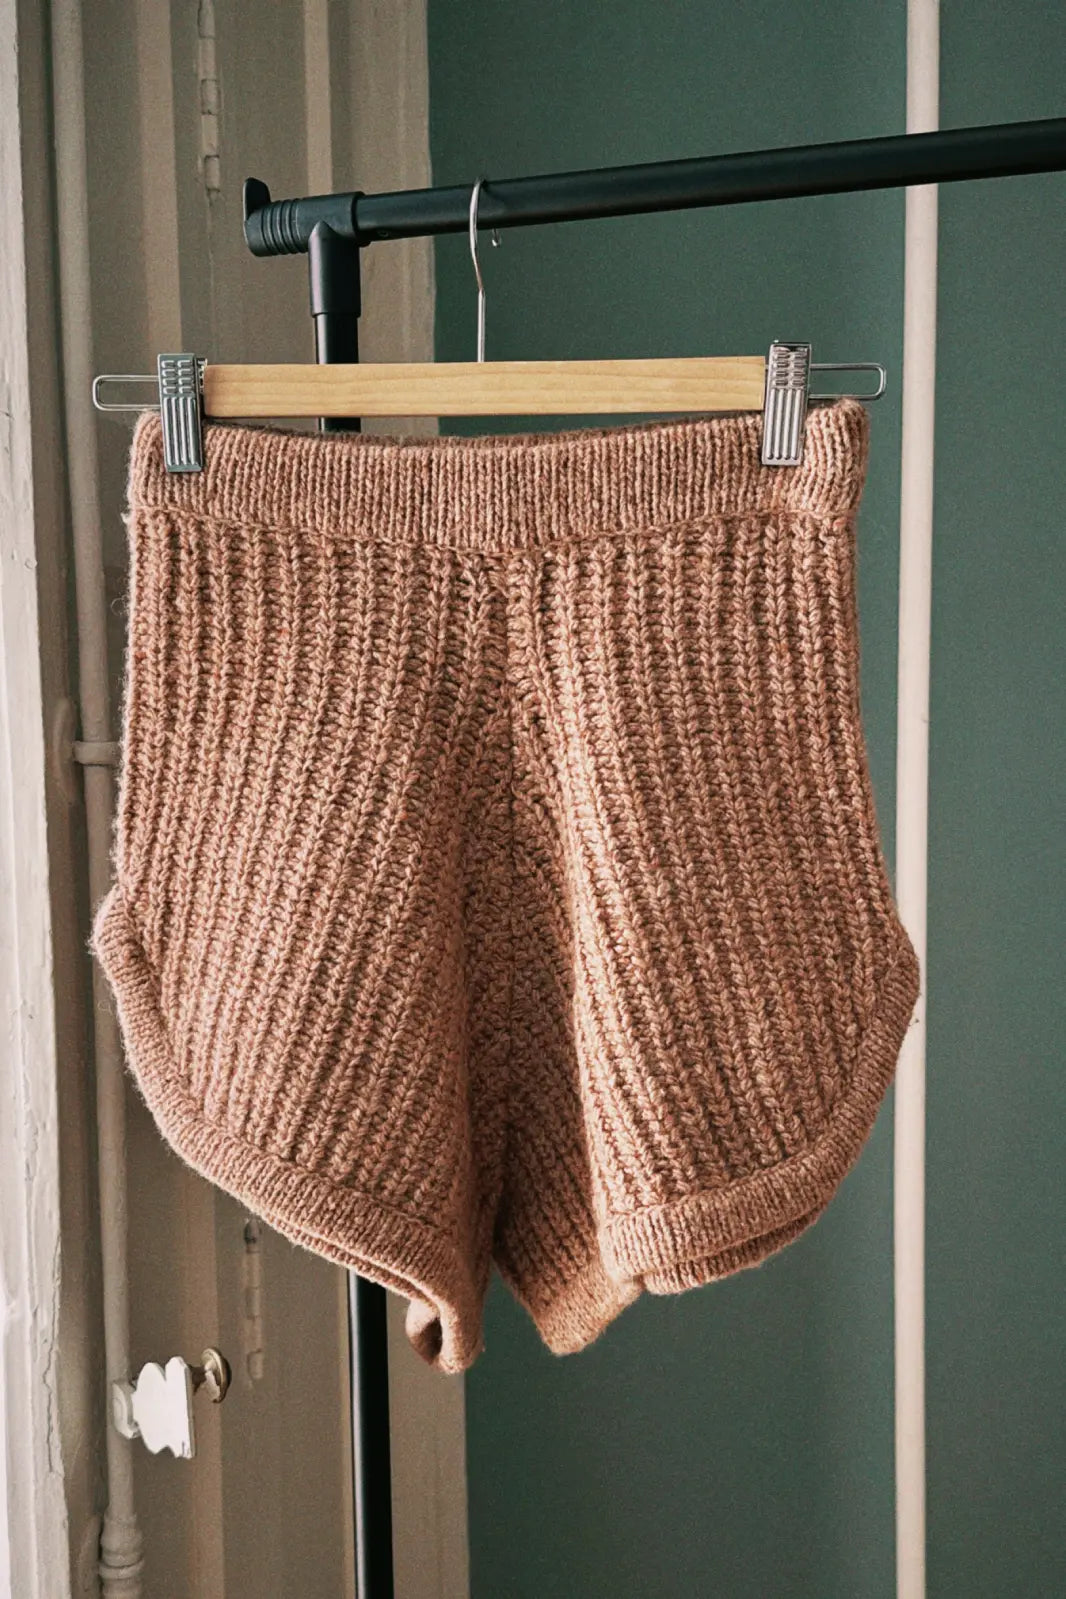 Sample 44 shorts